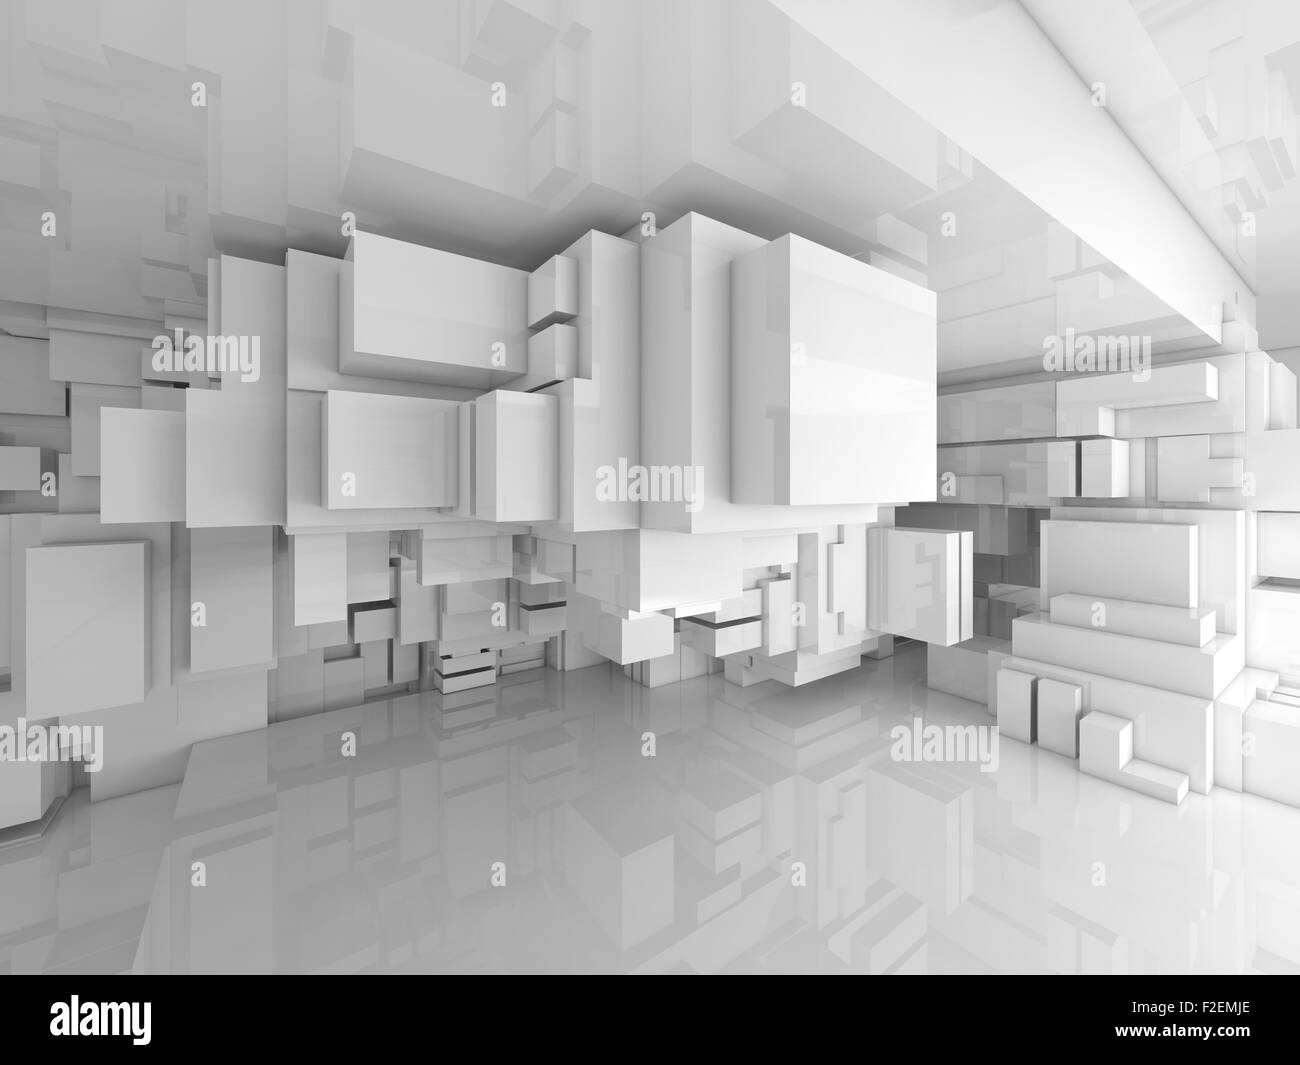 Résumé high-tech blanche vide intérieur avec des cubes chaotique constructions, 3d illustration Banque D'Images